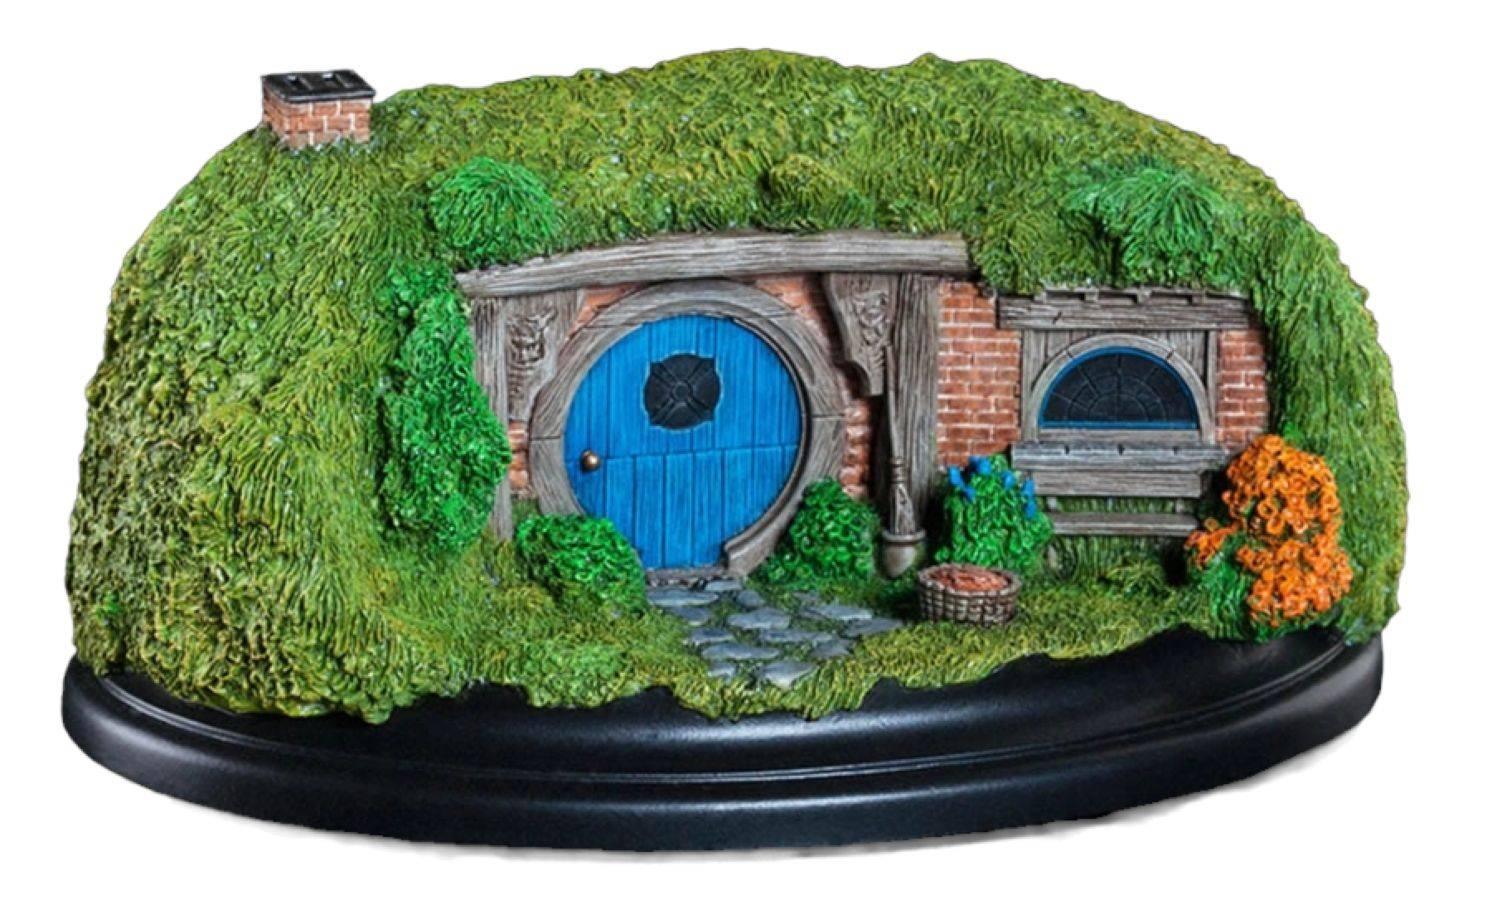 WET01293 The Hobbit - #26 Gandalf's Cutting Hobbit Hole Diorama - Weta Workshop - Titan Pop Culture